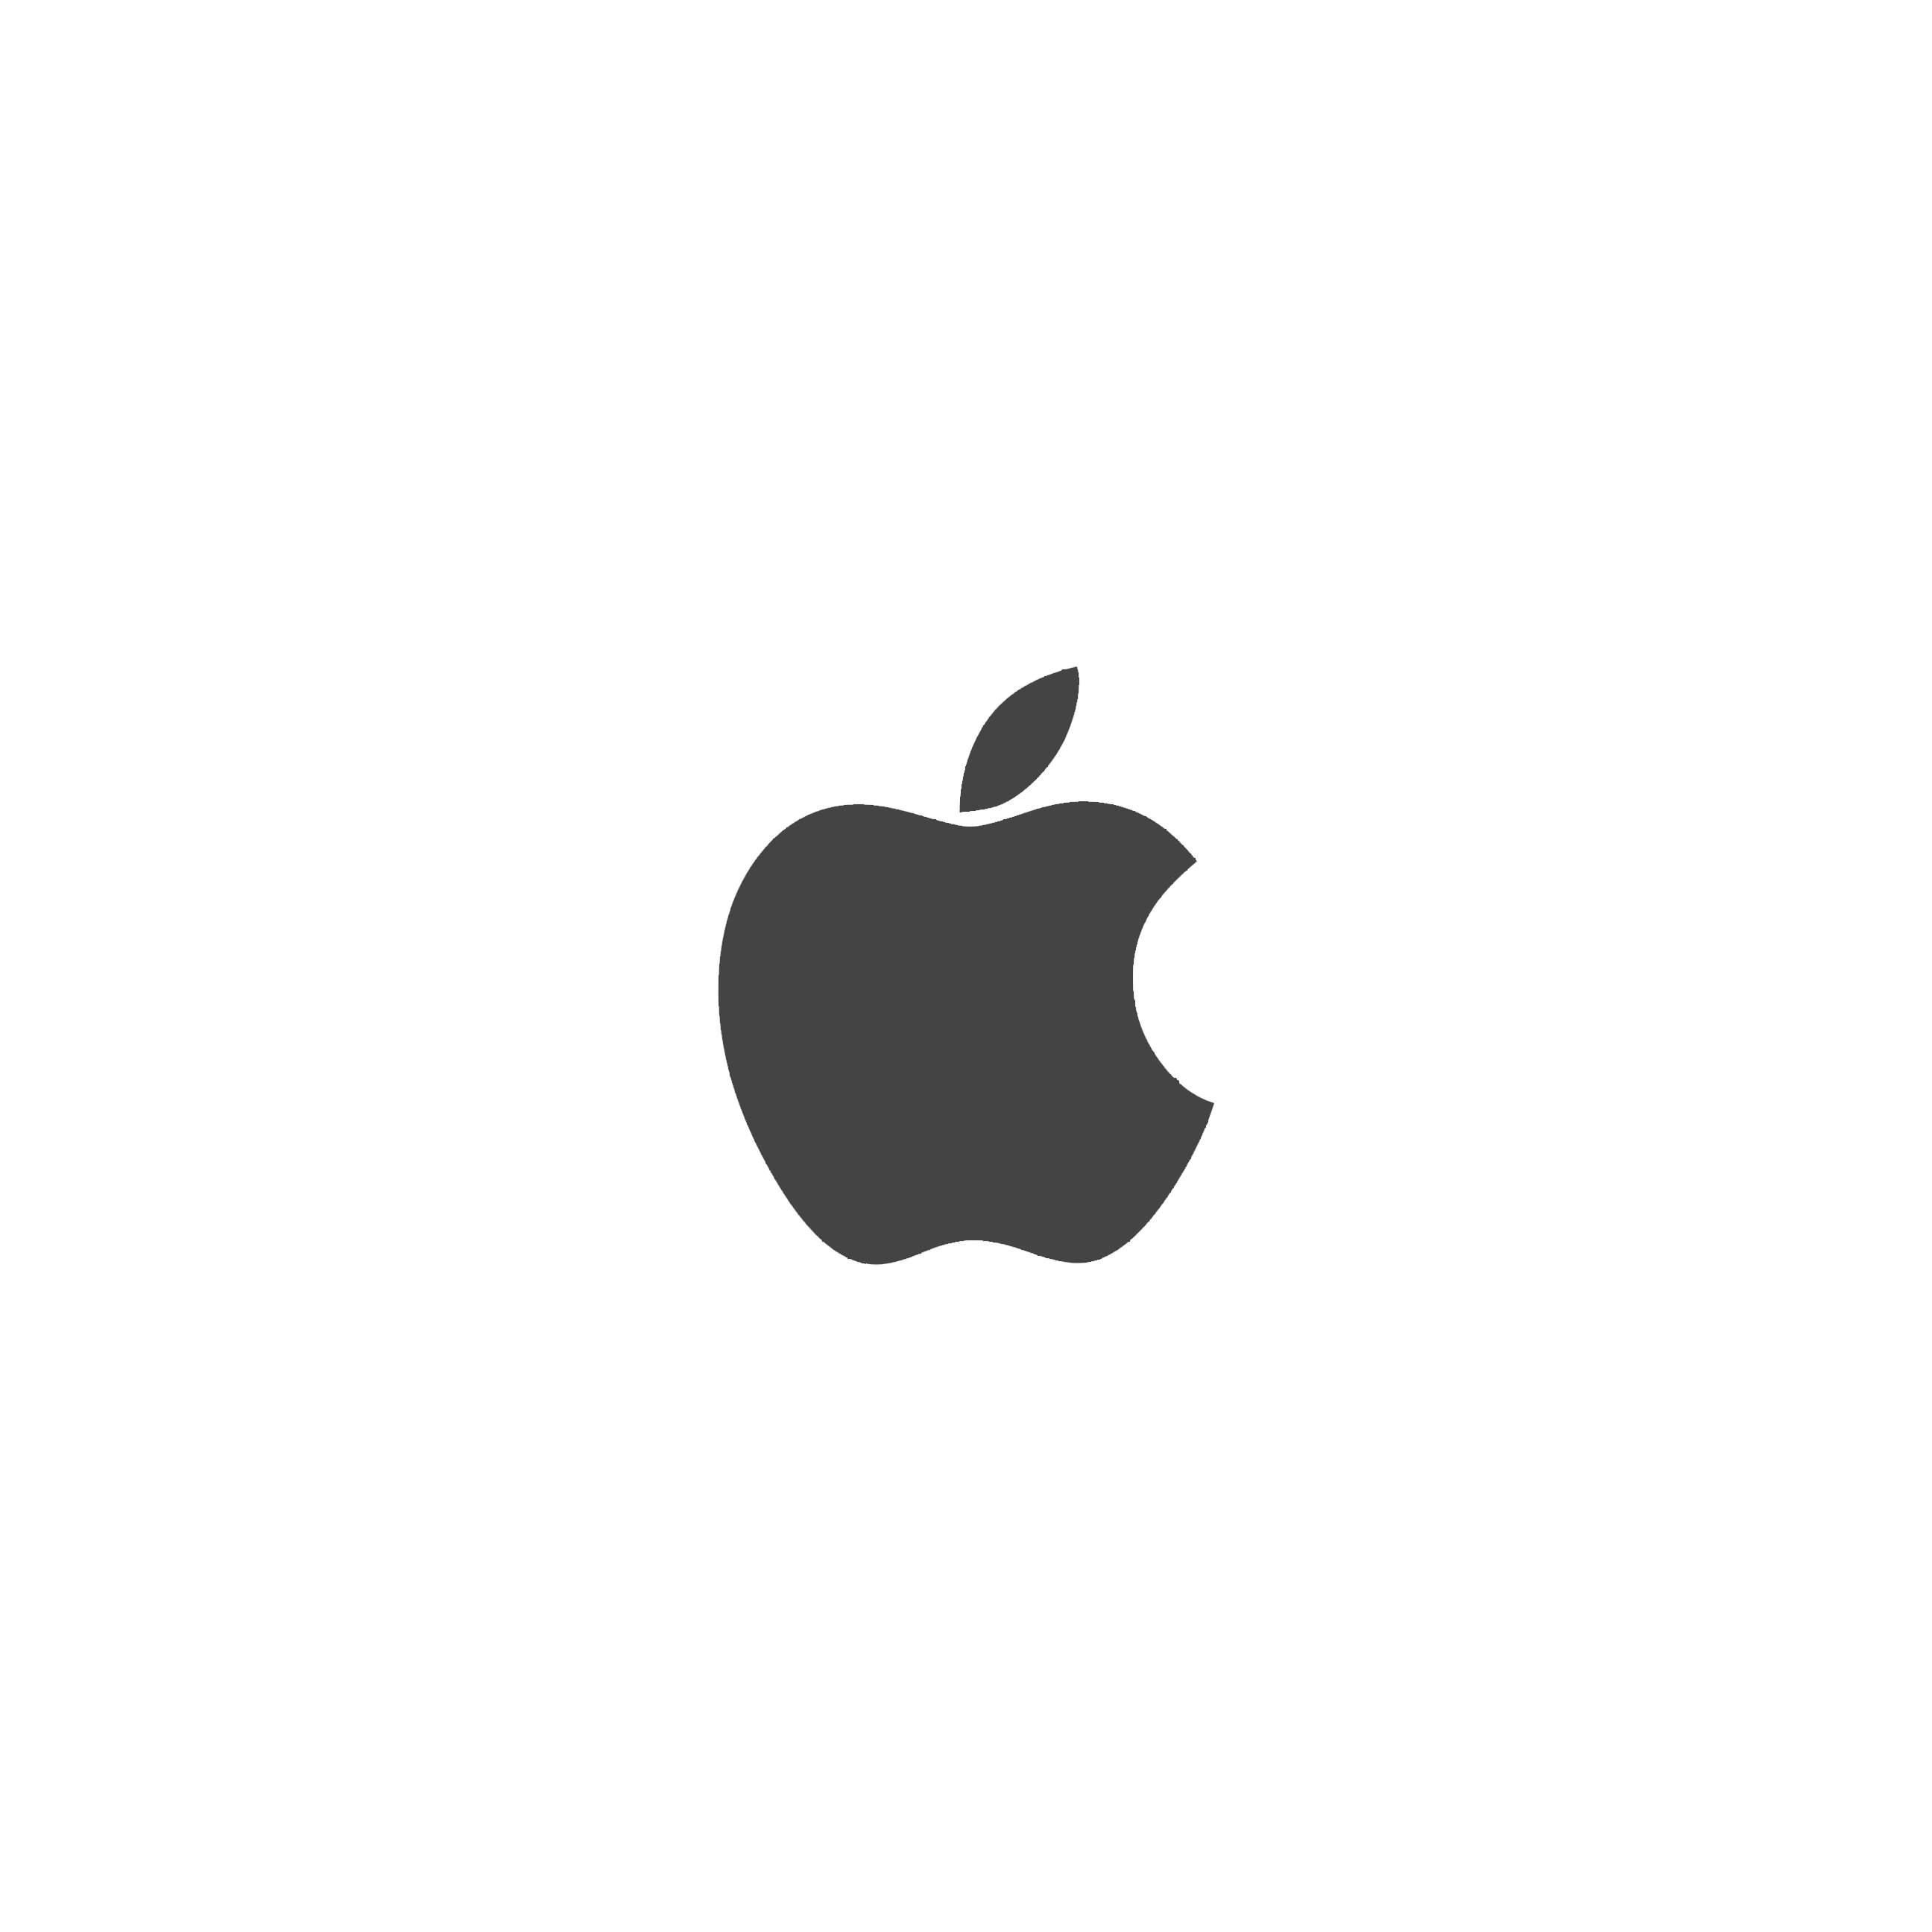 Apple Logo Black And White Wallpaper Sc Iphone6splus